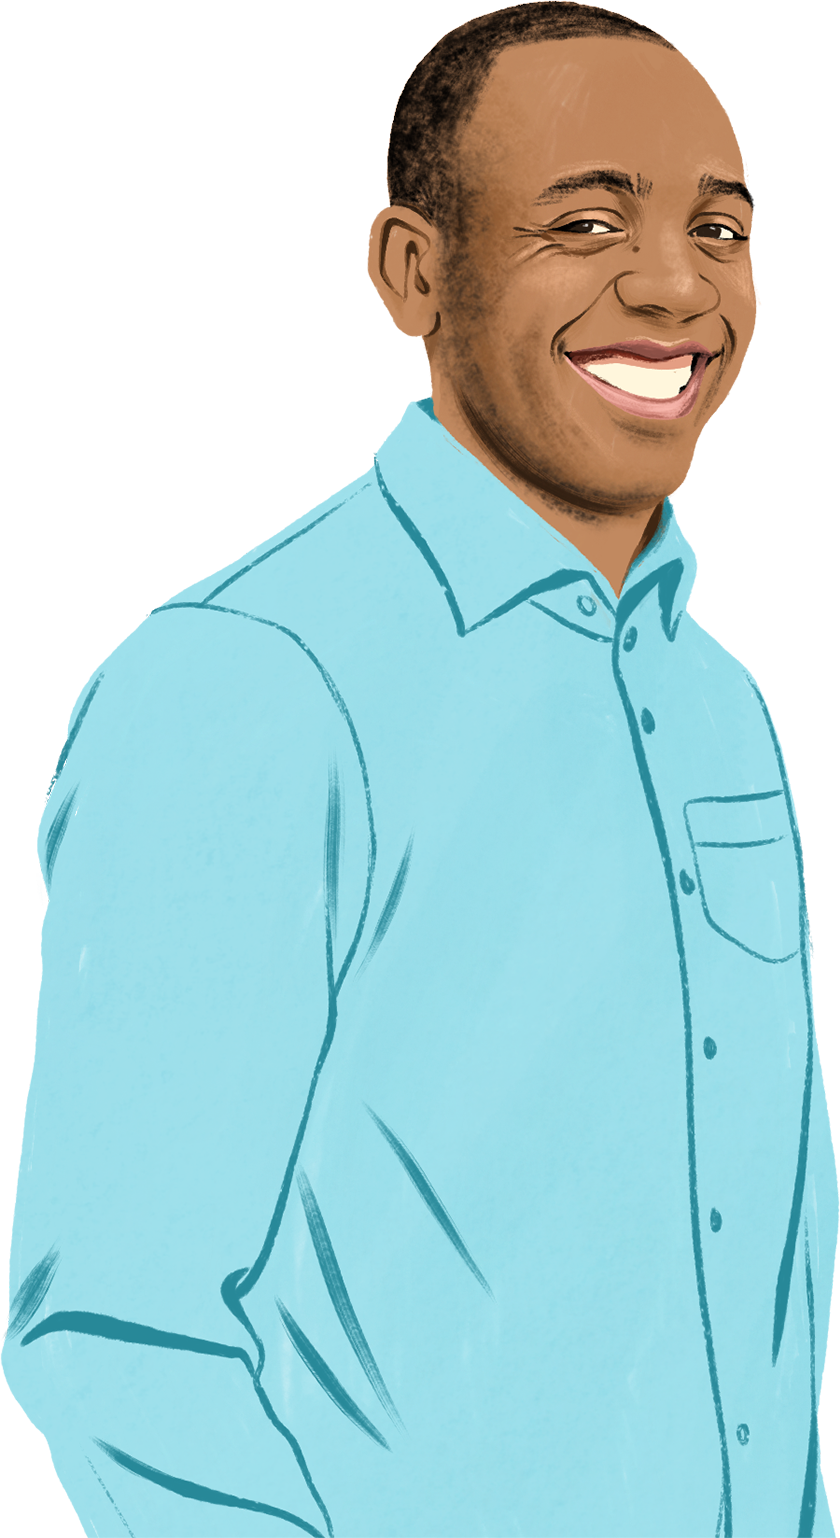 Illustriertes Porträt von Brian, der lächelt und von illustrierten iPad und iPhone Symbolen sowie einem Vorhängeschloss umgeben ist.